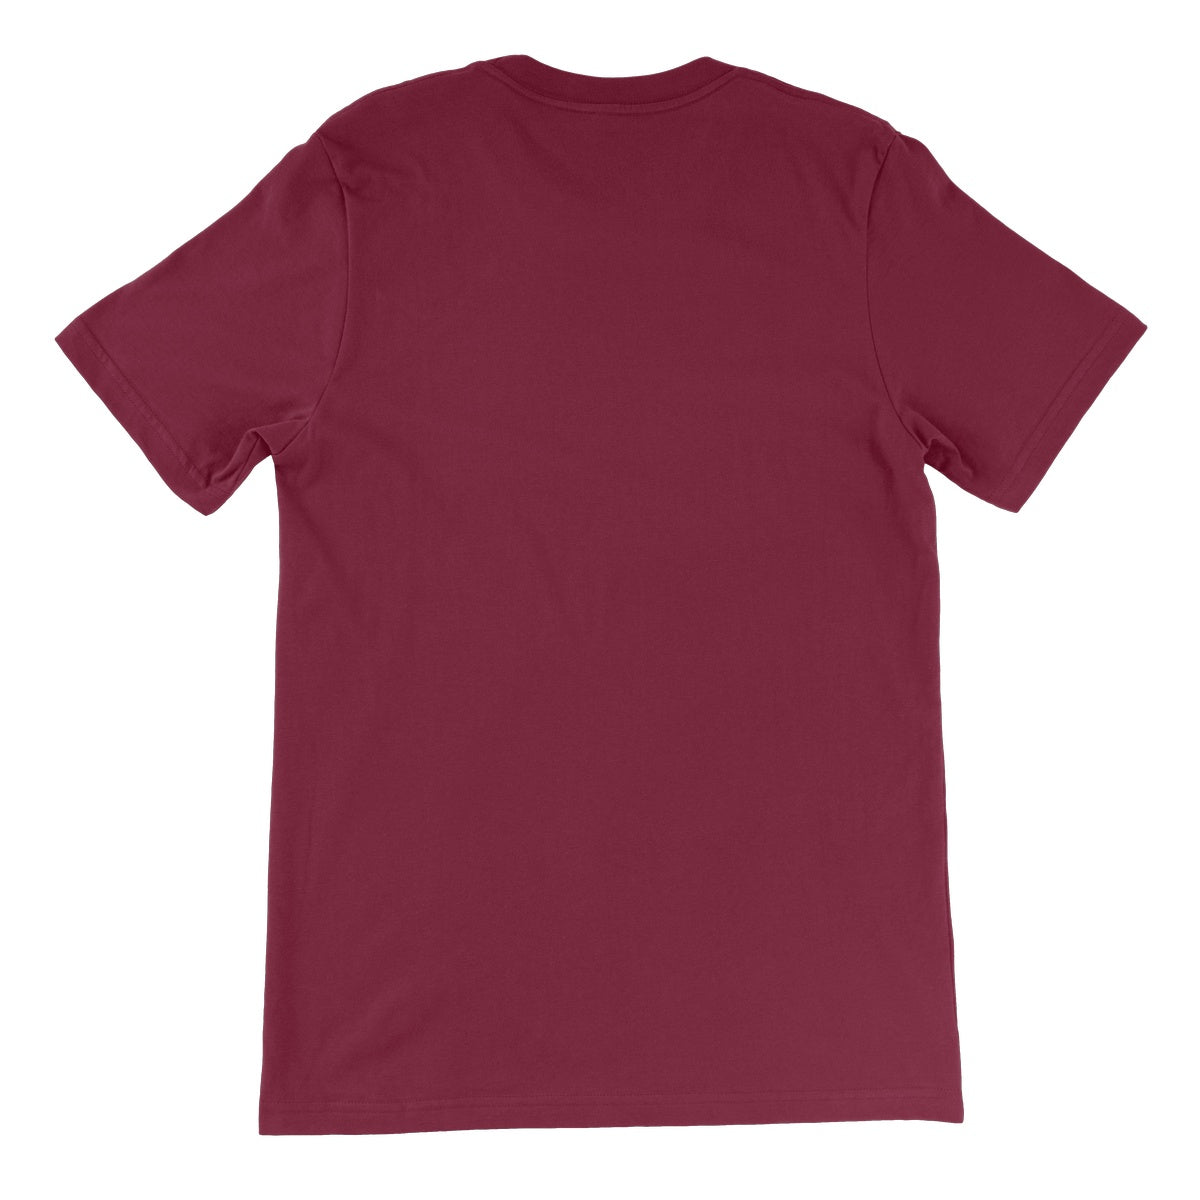 Algiz Unisex Short Sleeve T-Shirt